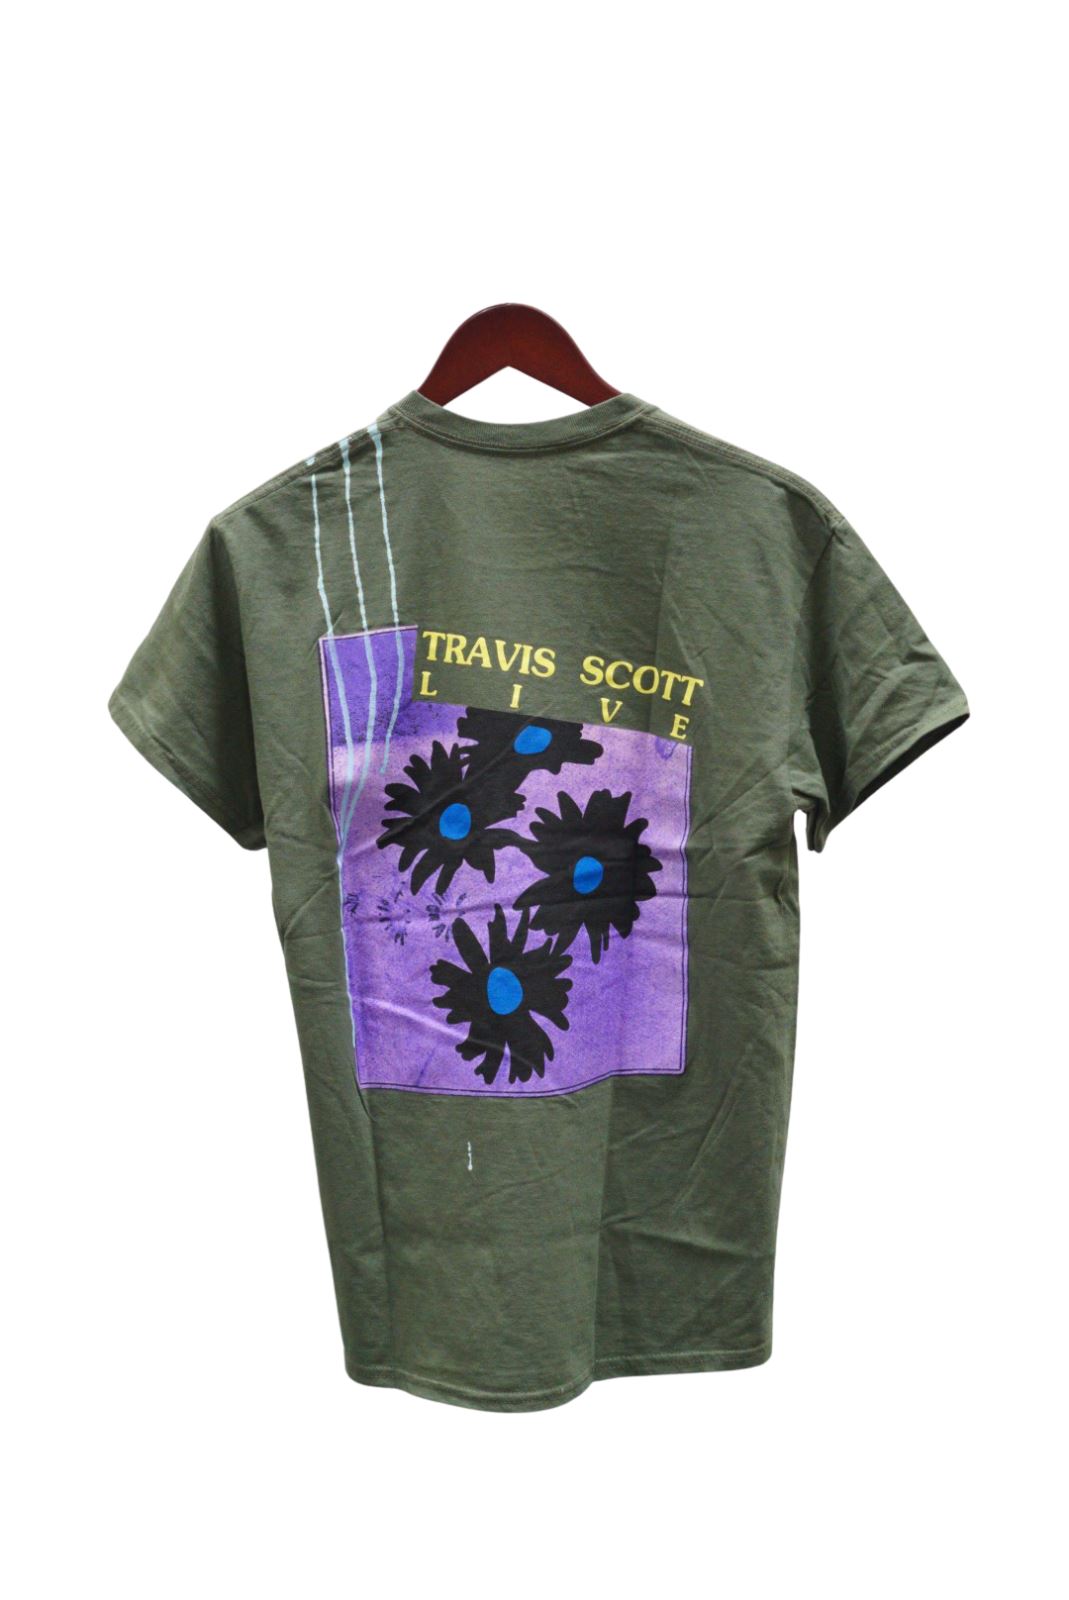 Travis Scott Astroworld Live In Europe Green Tee